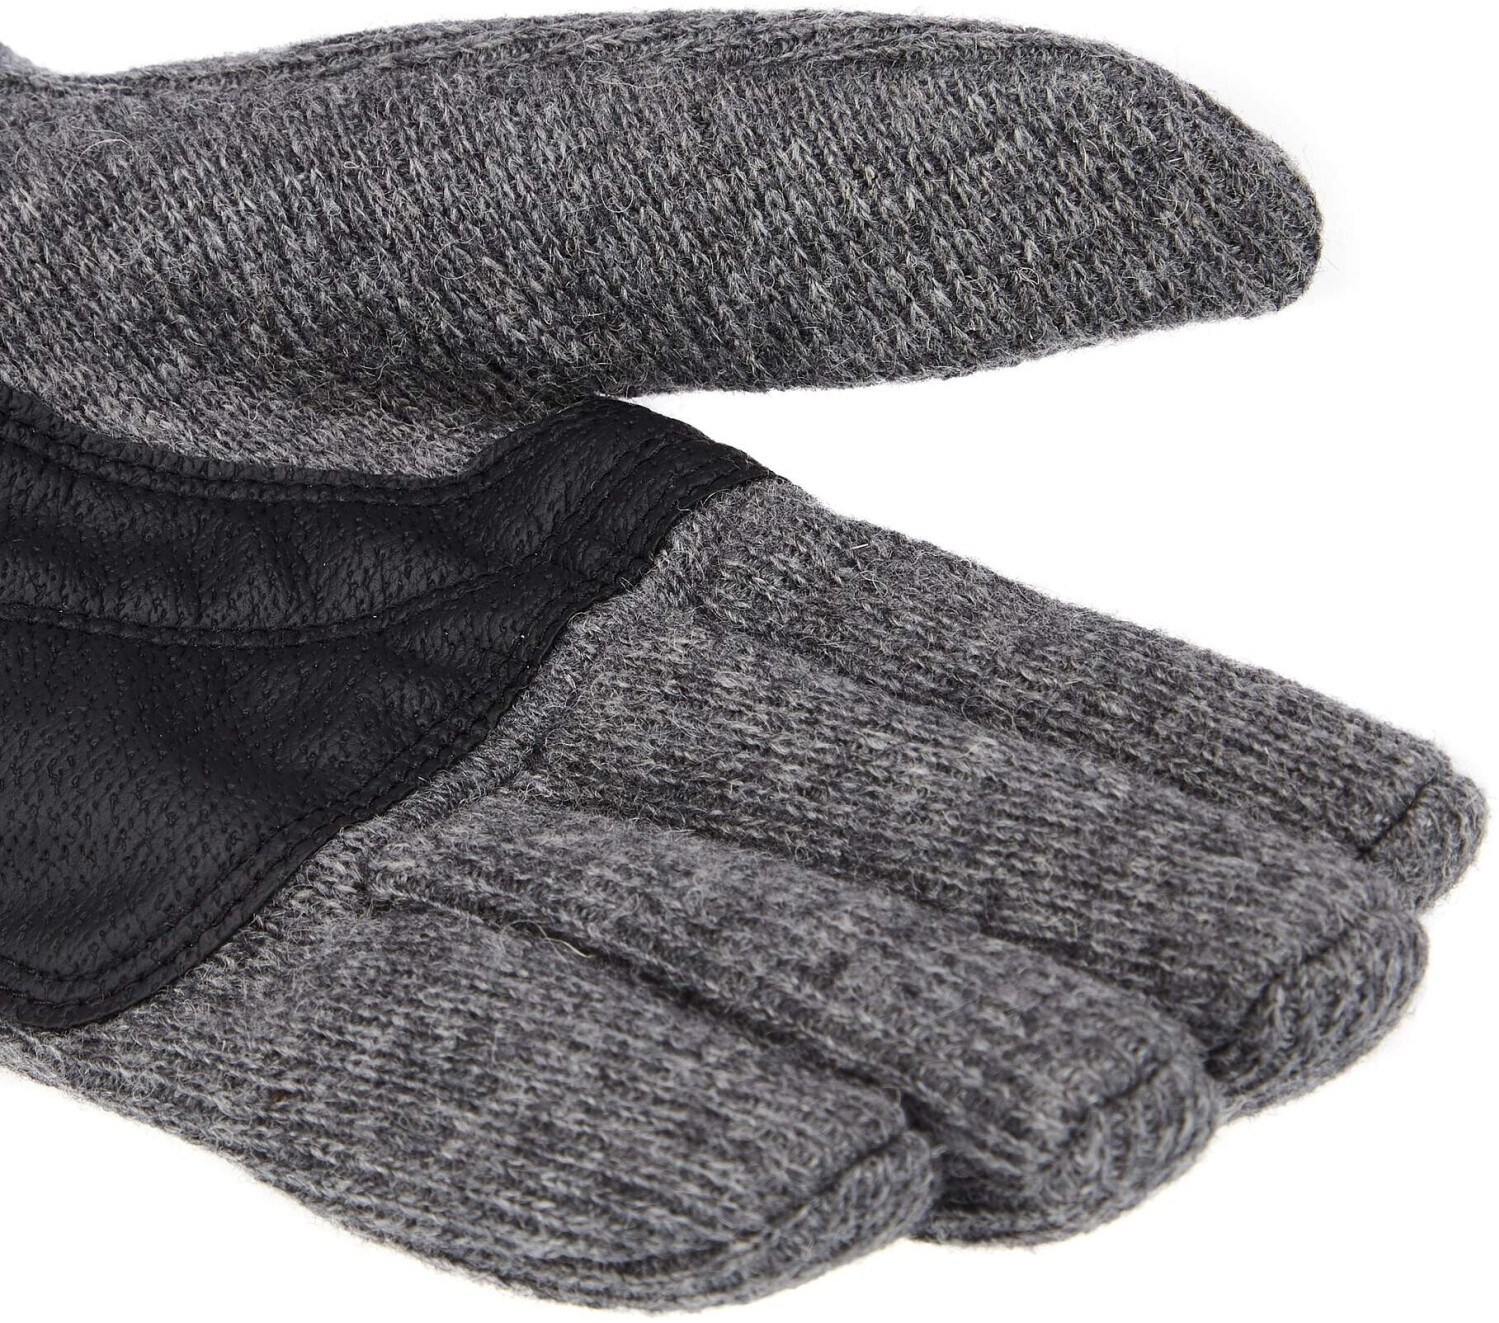 Jack Wolfskin Stormlock Gloves (1900923) phantom ab 31,99 € |  Preisvergleich bei